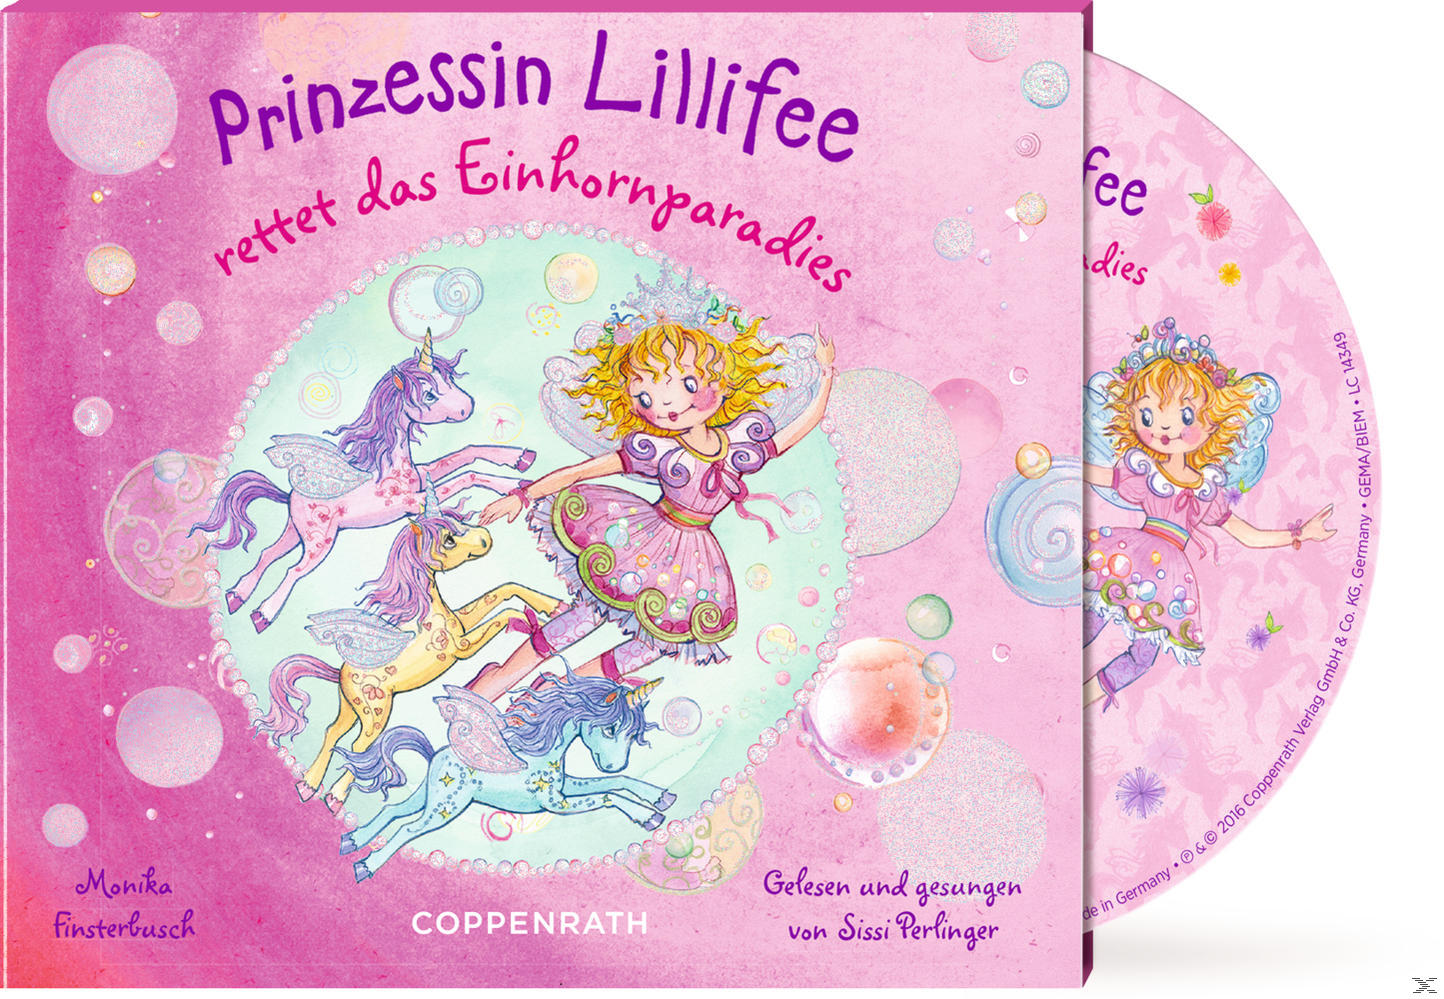 Lillifee Einhornparadies das - Prinzessin (CD) rettet